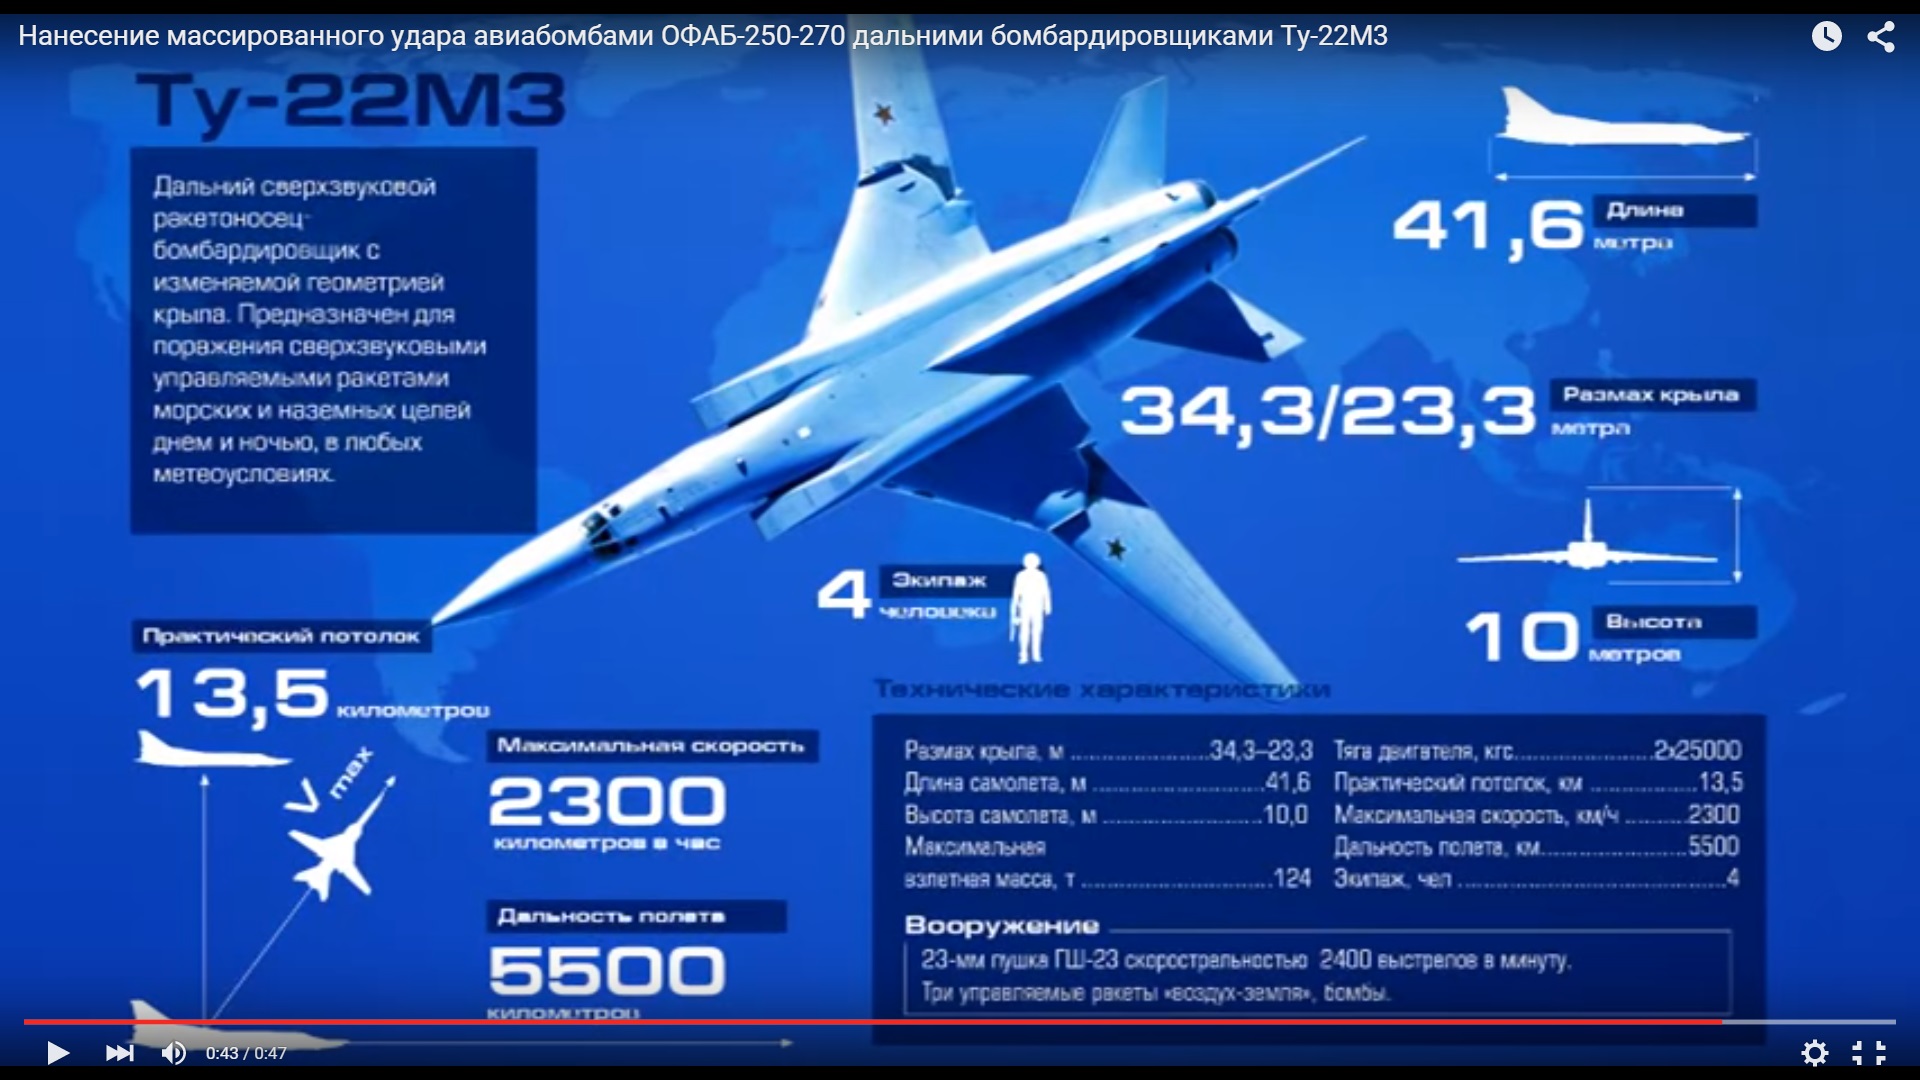 Самолет ту 22 м характеристики. Технические характеристики самолета ту 22 м3. Ту-22м3 технические характеристики. Ту-22м3 ТТХ. Сверхзвуковой бомбардировщик ту-22м3 скорость.